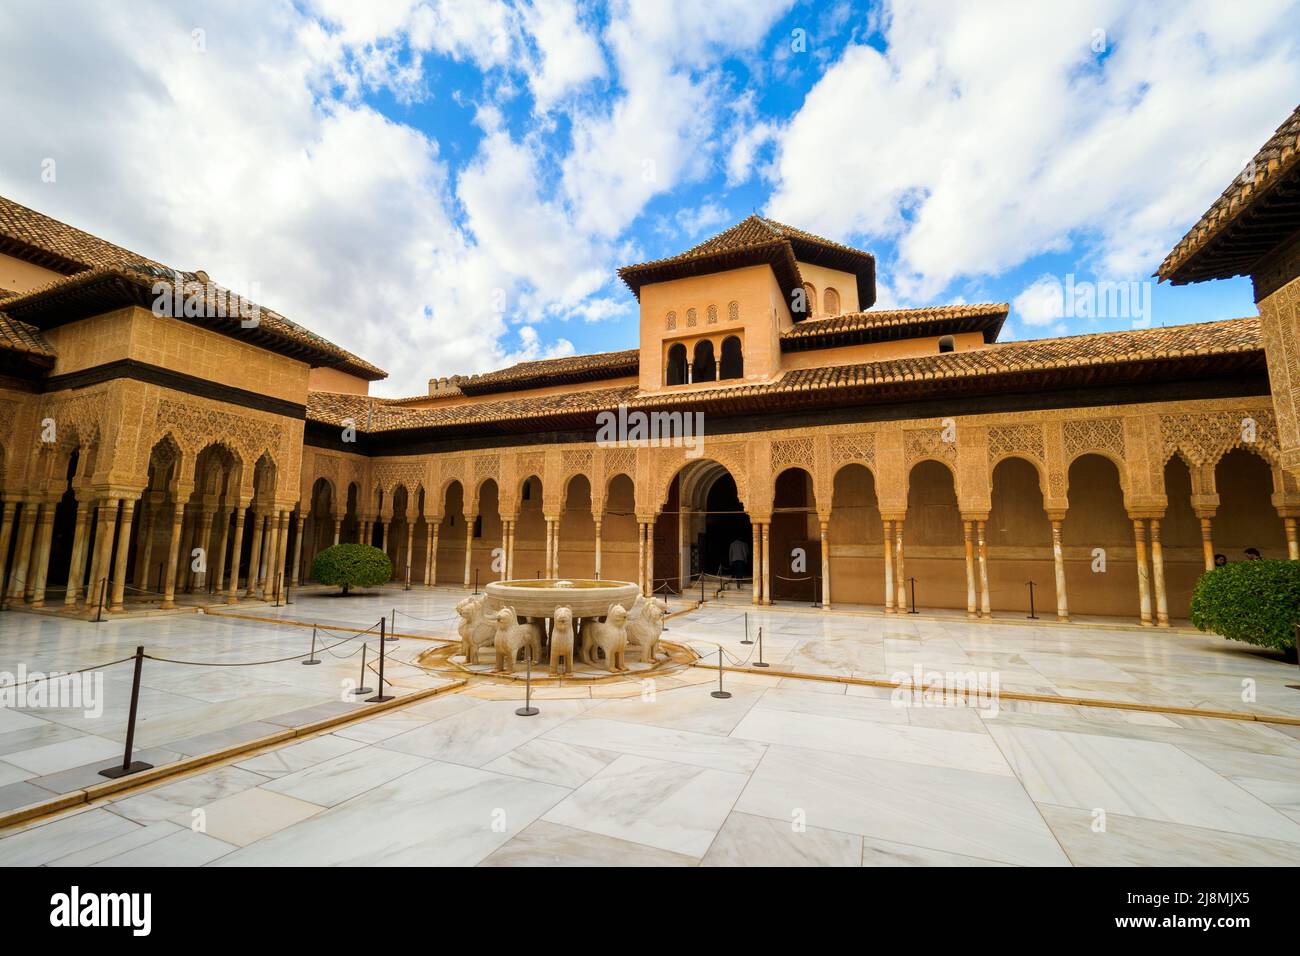 Cour des Lions dans les palais royaux de Nasrid - complexe de l'Alhambra - Grenade, Espagne Banque D'Images